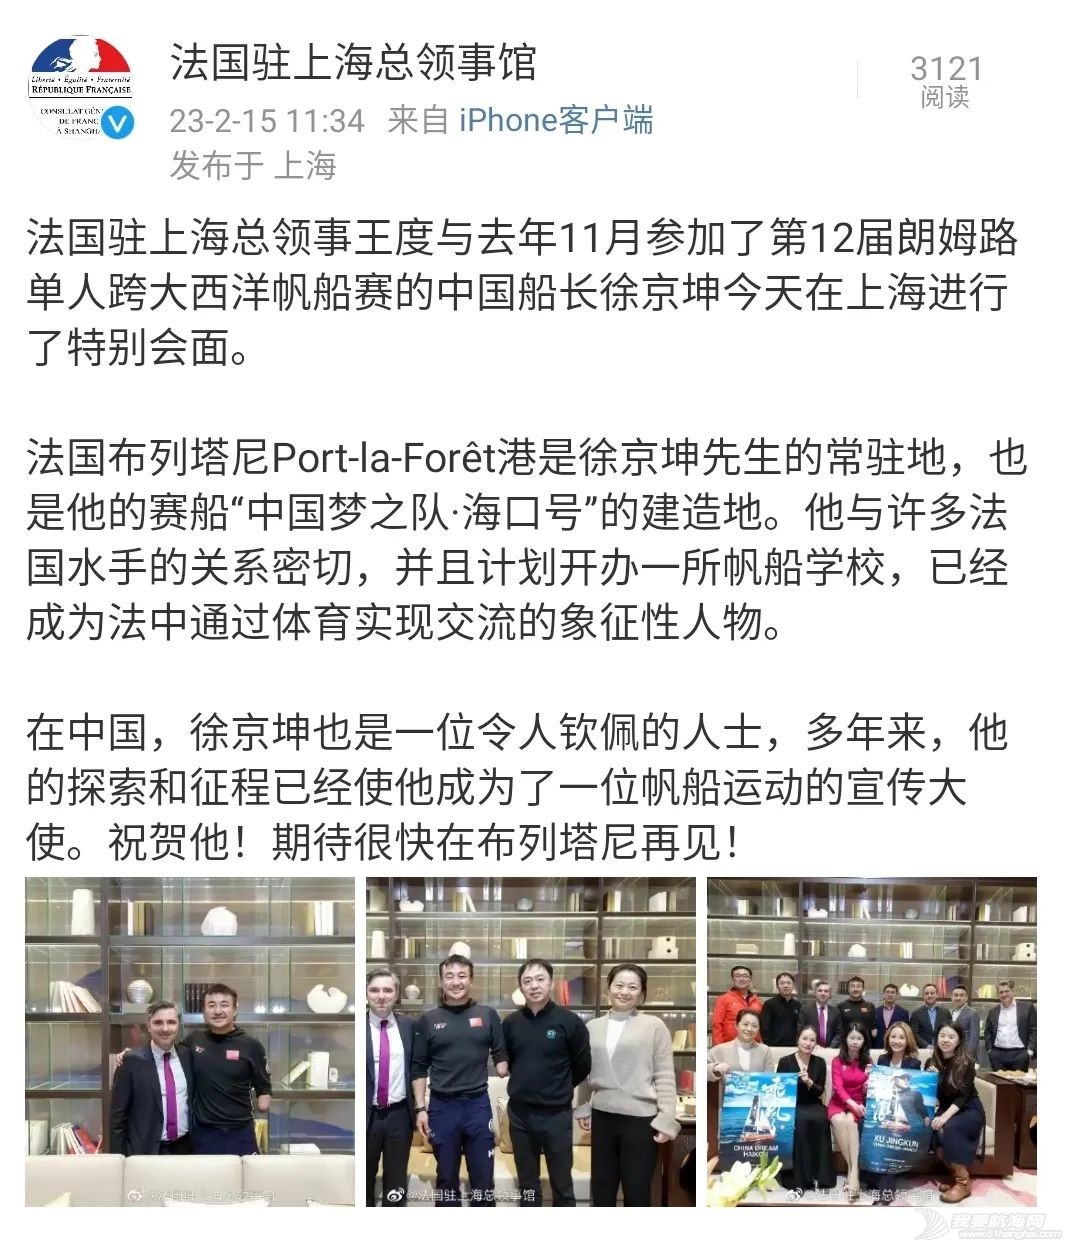 中国梦之队上海站分享会---梦想,就要说到做到w33.jpg